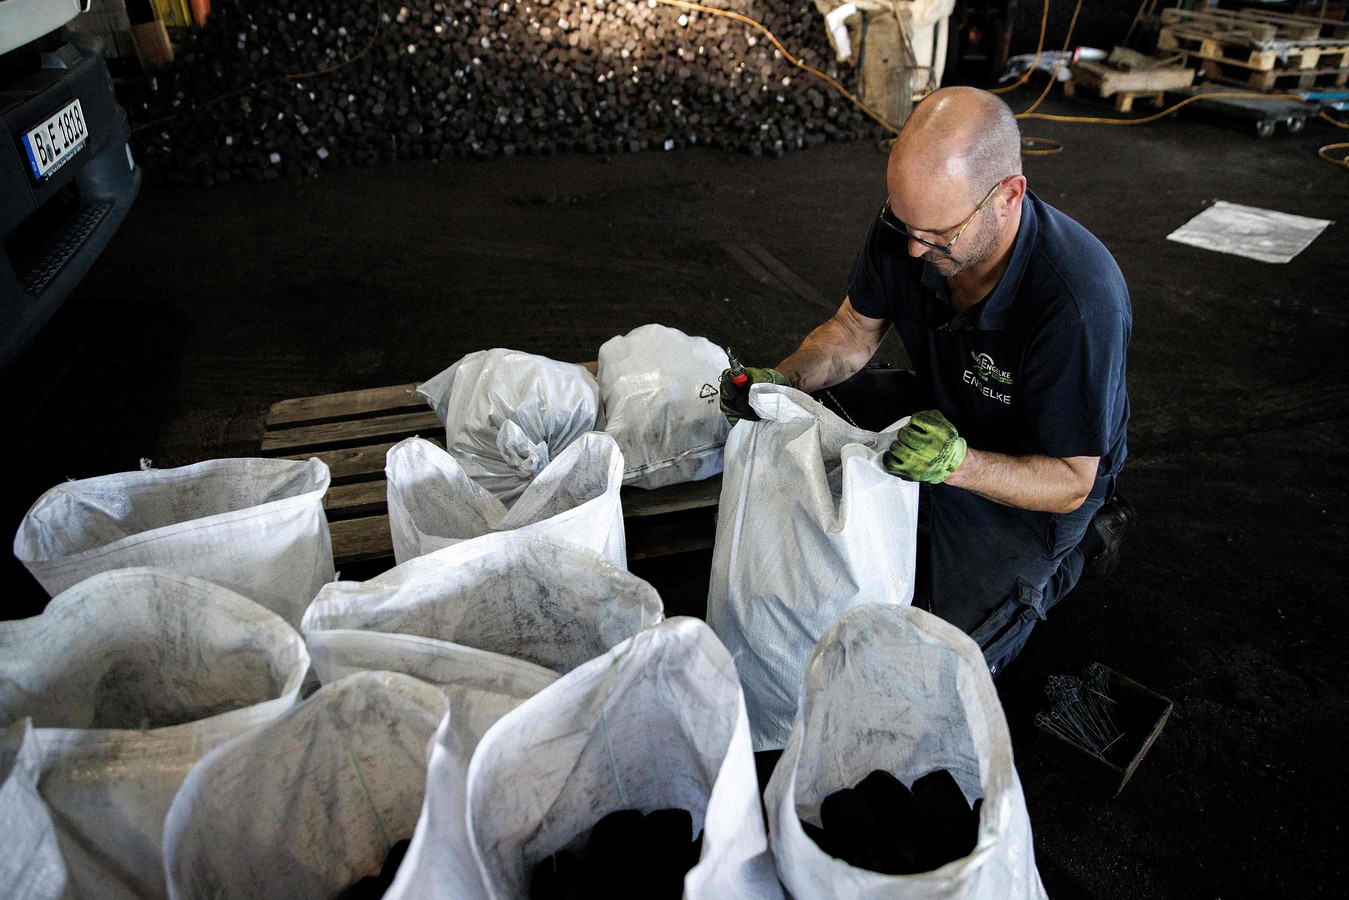 Un ouvrier remplit des sacs de charbon dans l'entrepôt de l'entreprise de produits de chauffage "Hans Engelke Energie" à Berlin